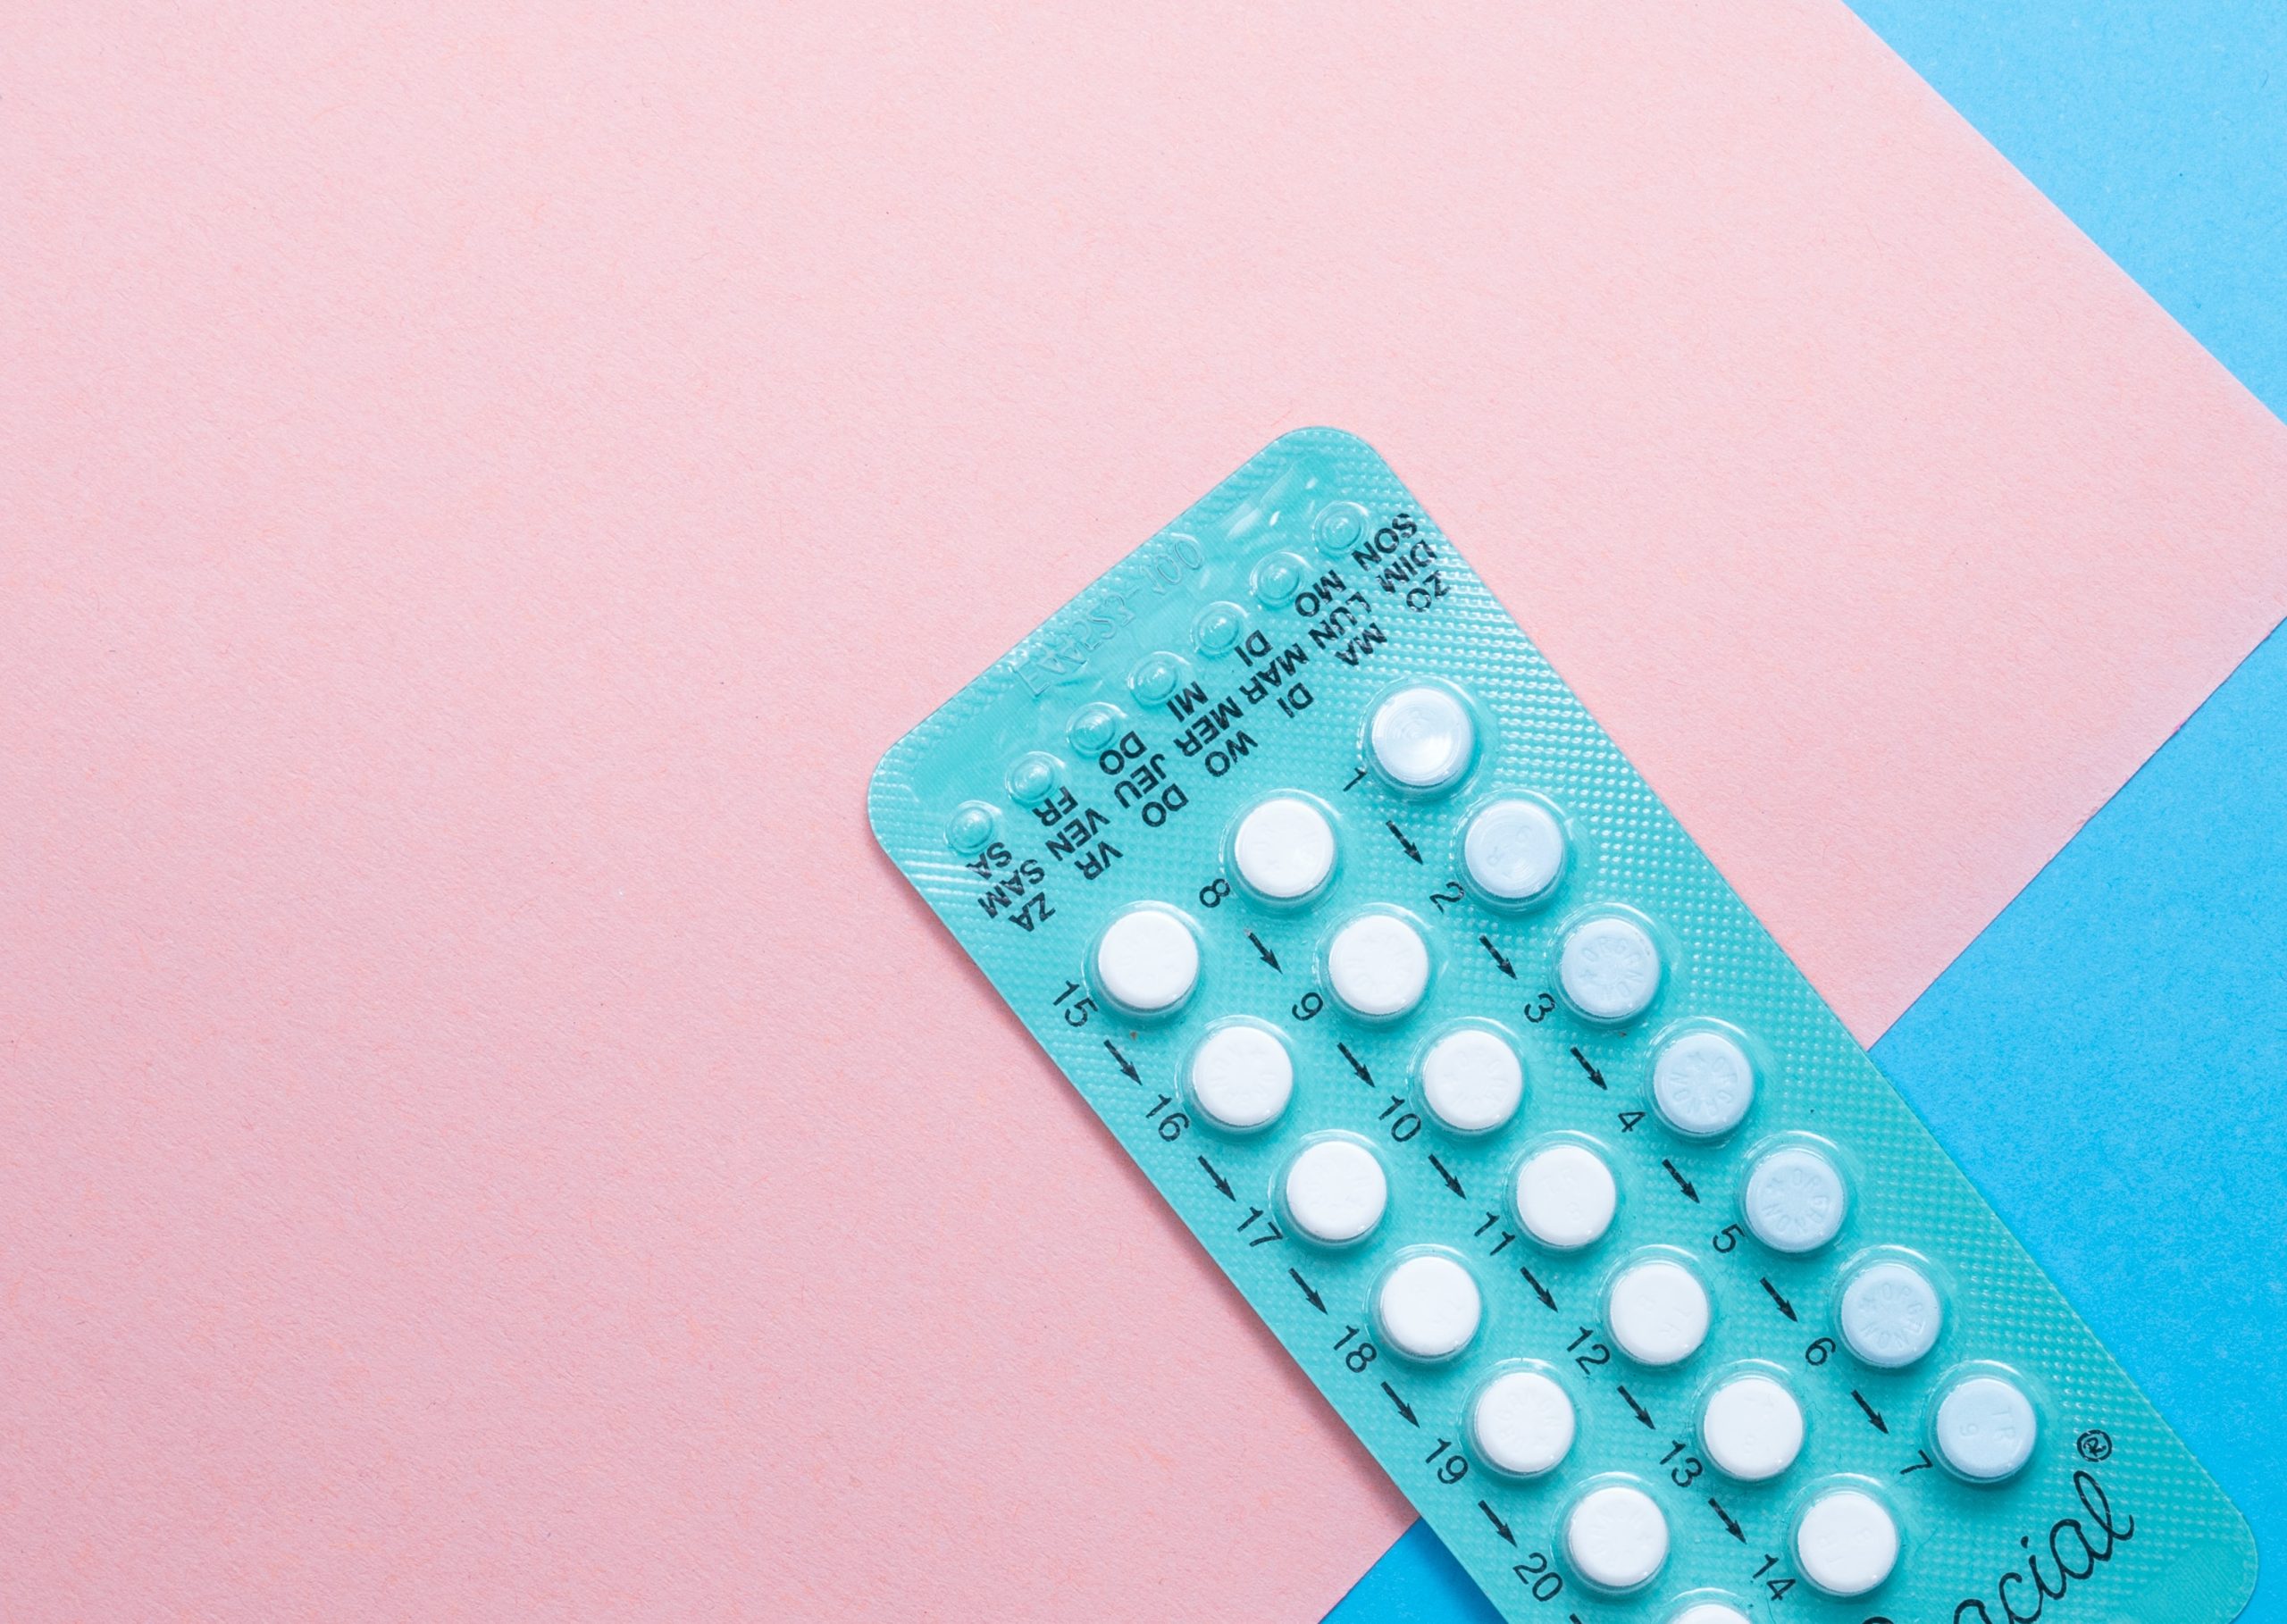 La pillola contraccettiva potrebbe influenzare le aree celebrali deputate al controllo della paura